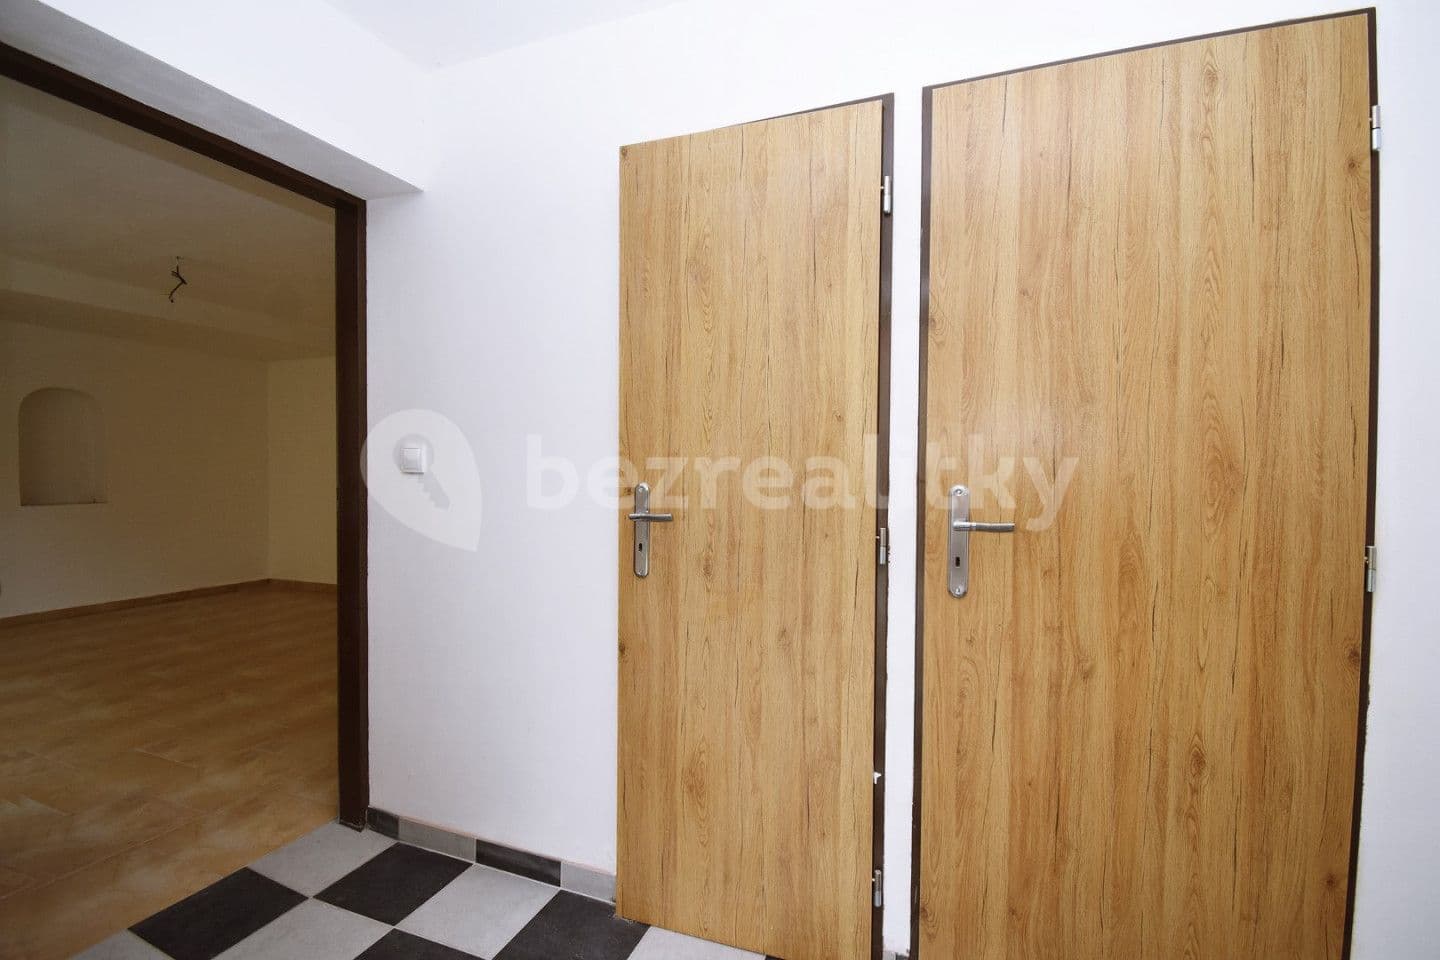 1 bedroom with open-plan kitchen flat for sale, 54 m², U Parku, Všetaty, Středočeský Region